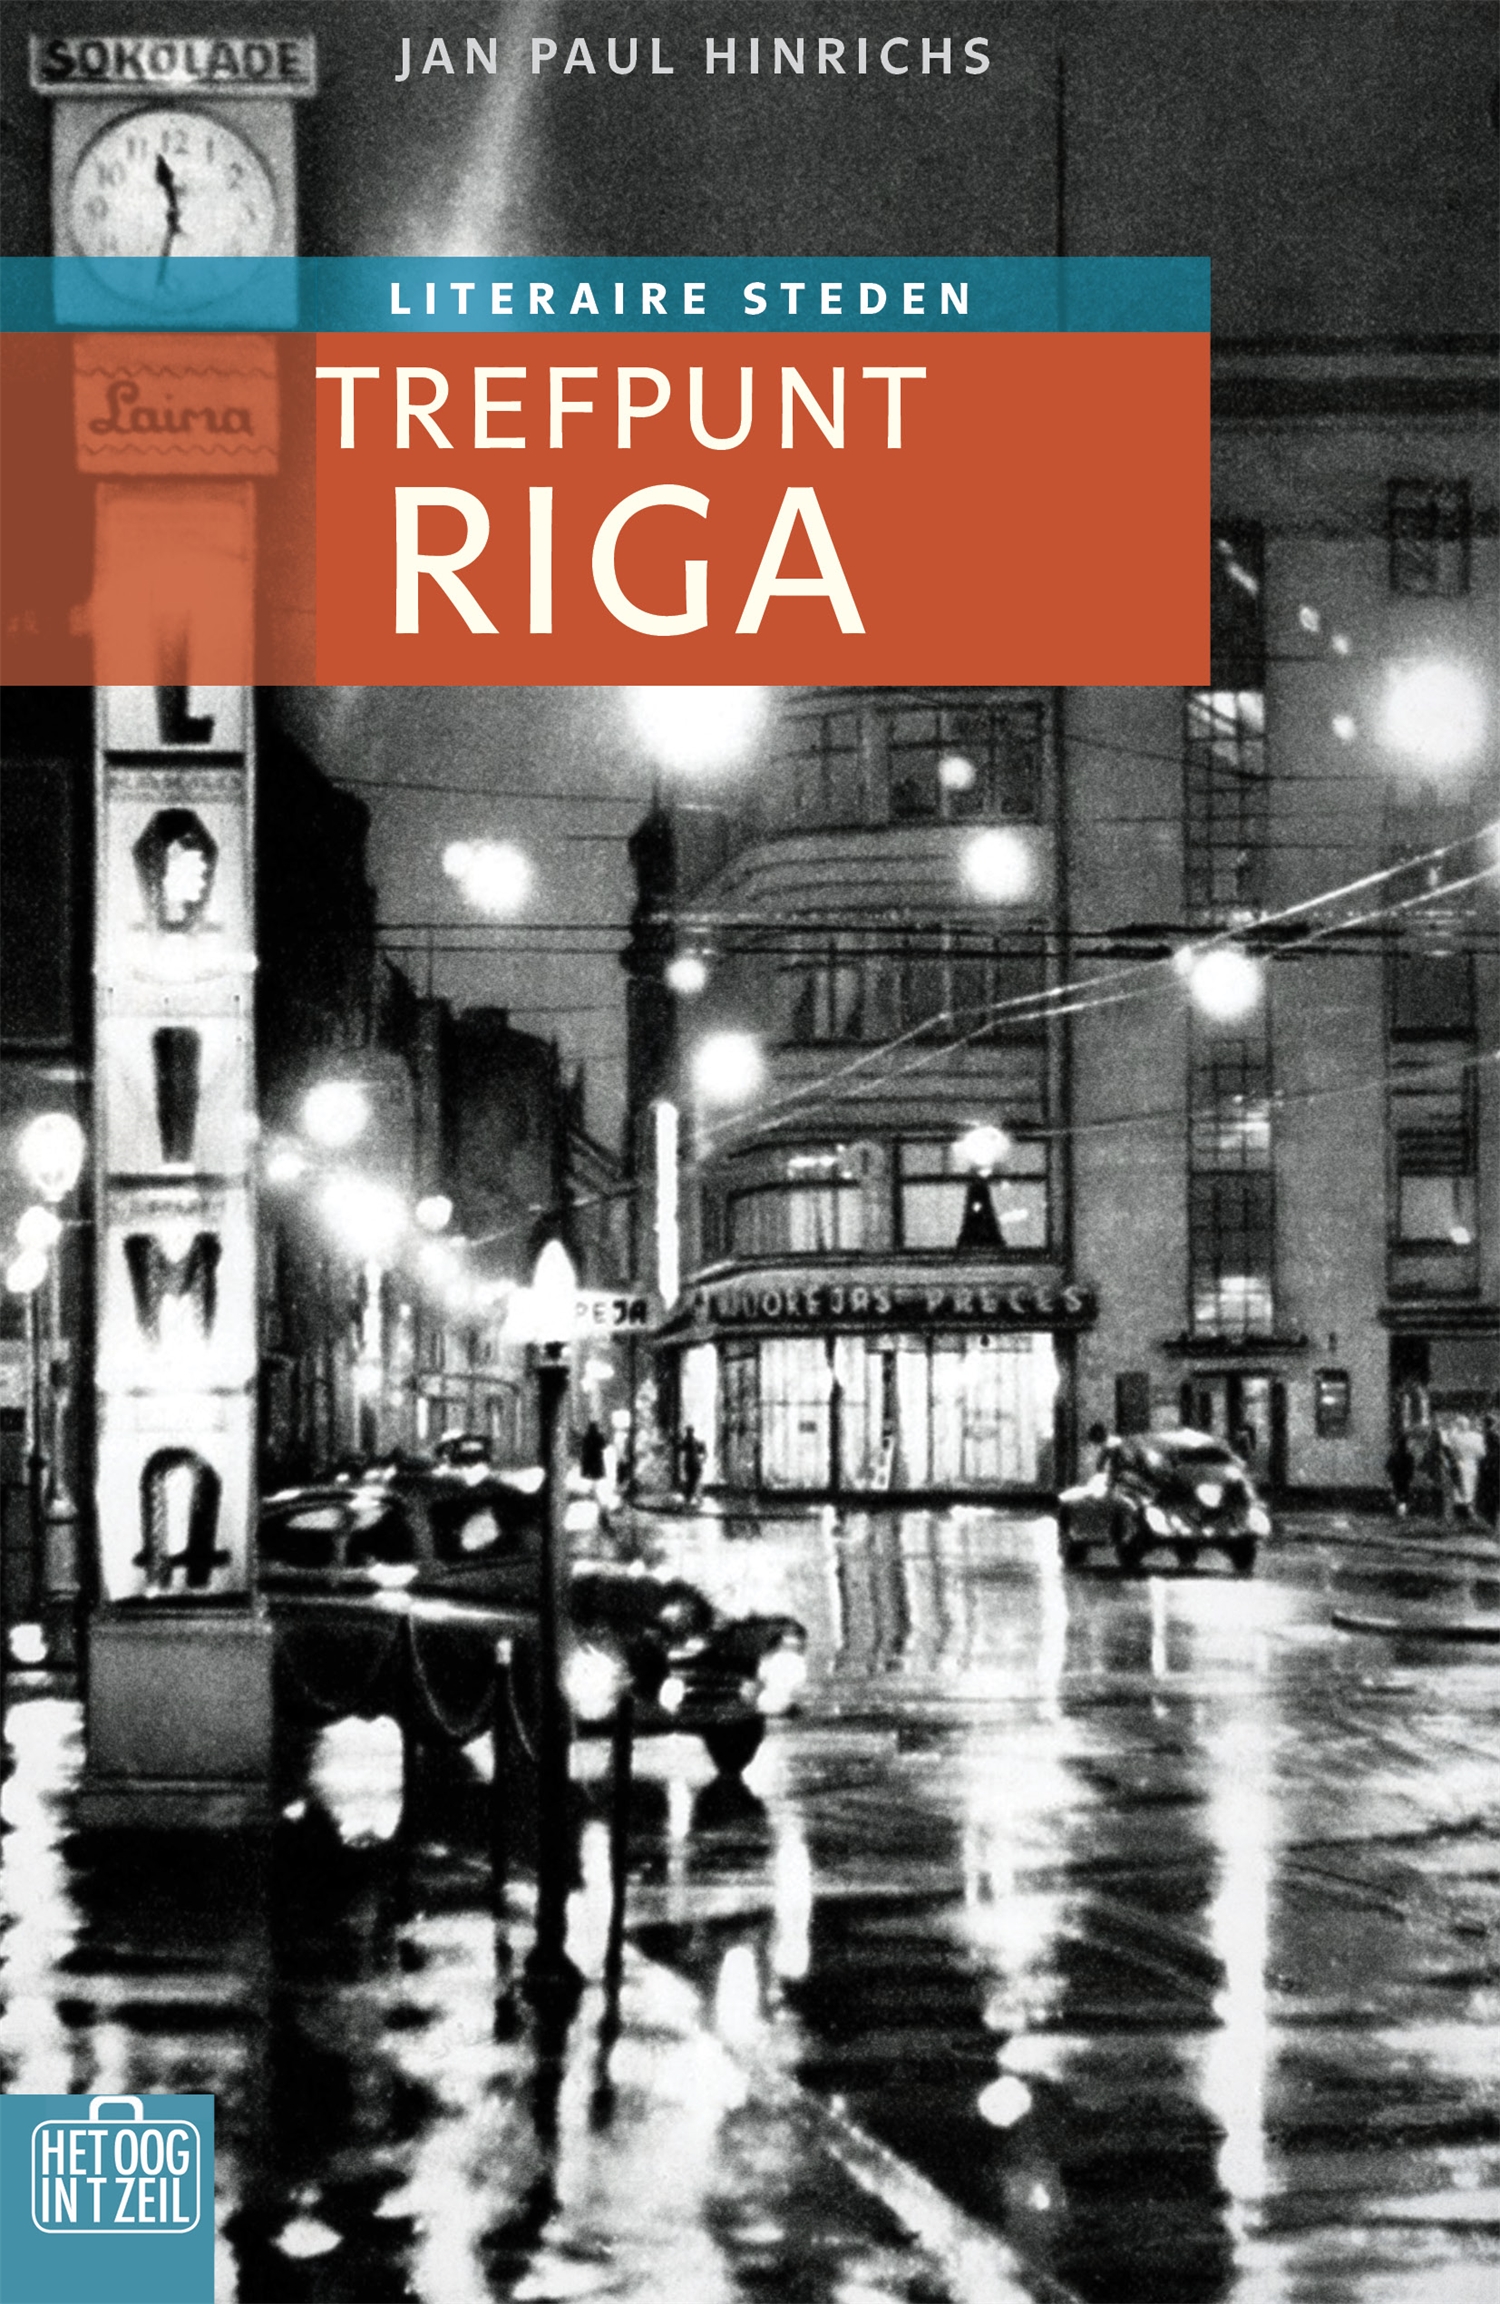 Trefpunt Riga